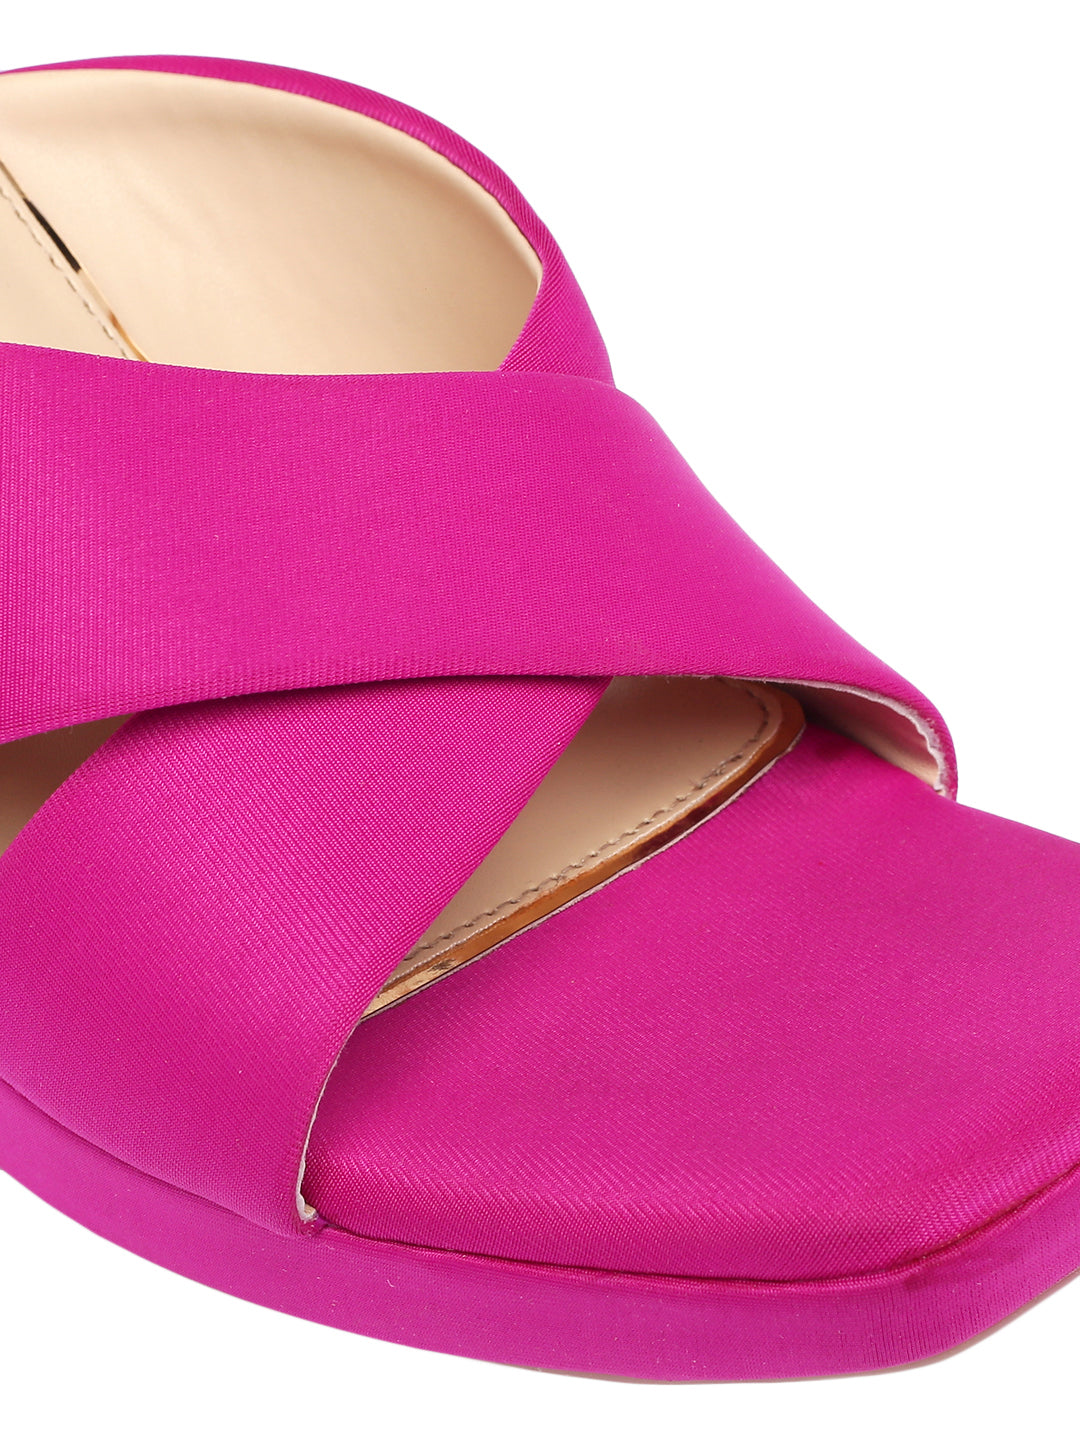 Liliana Pink Wedge Heels